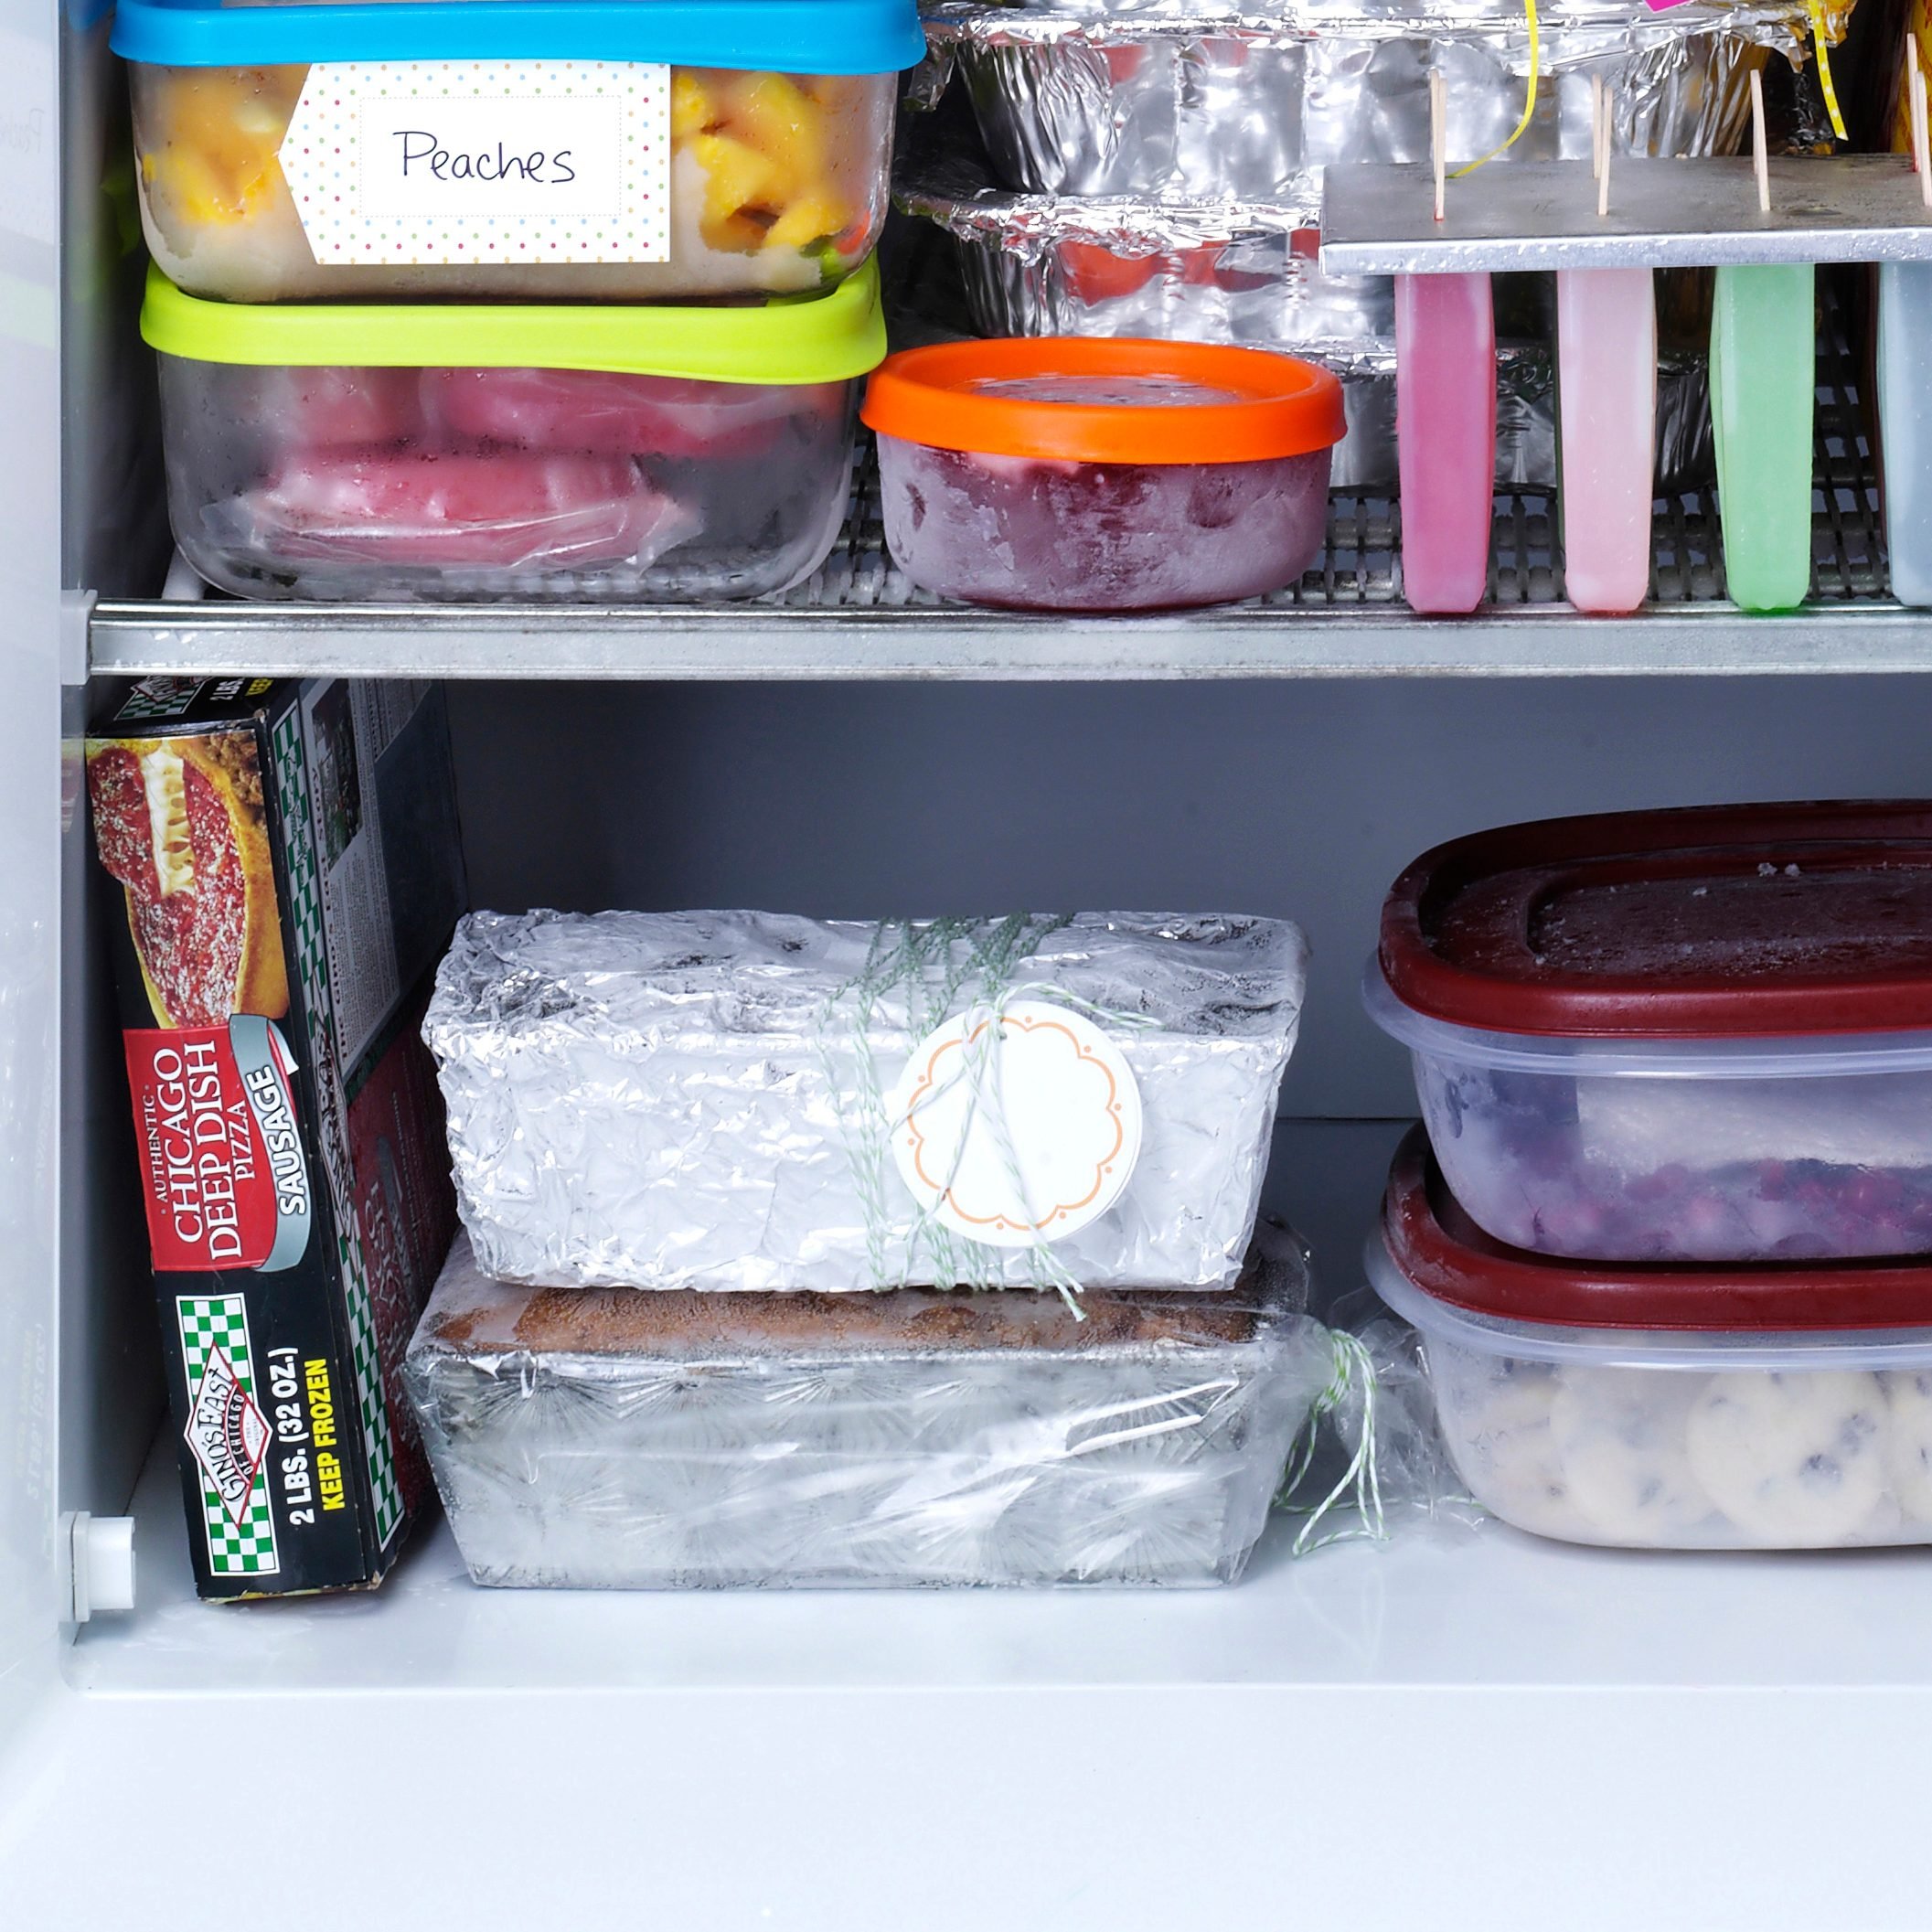 freezer with assorted frozen foods